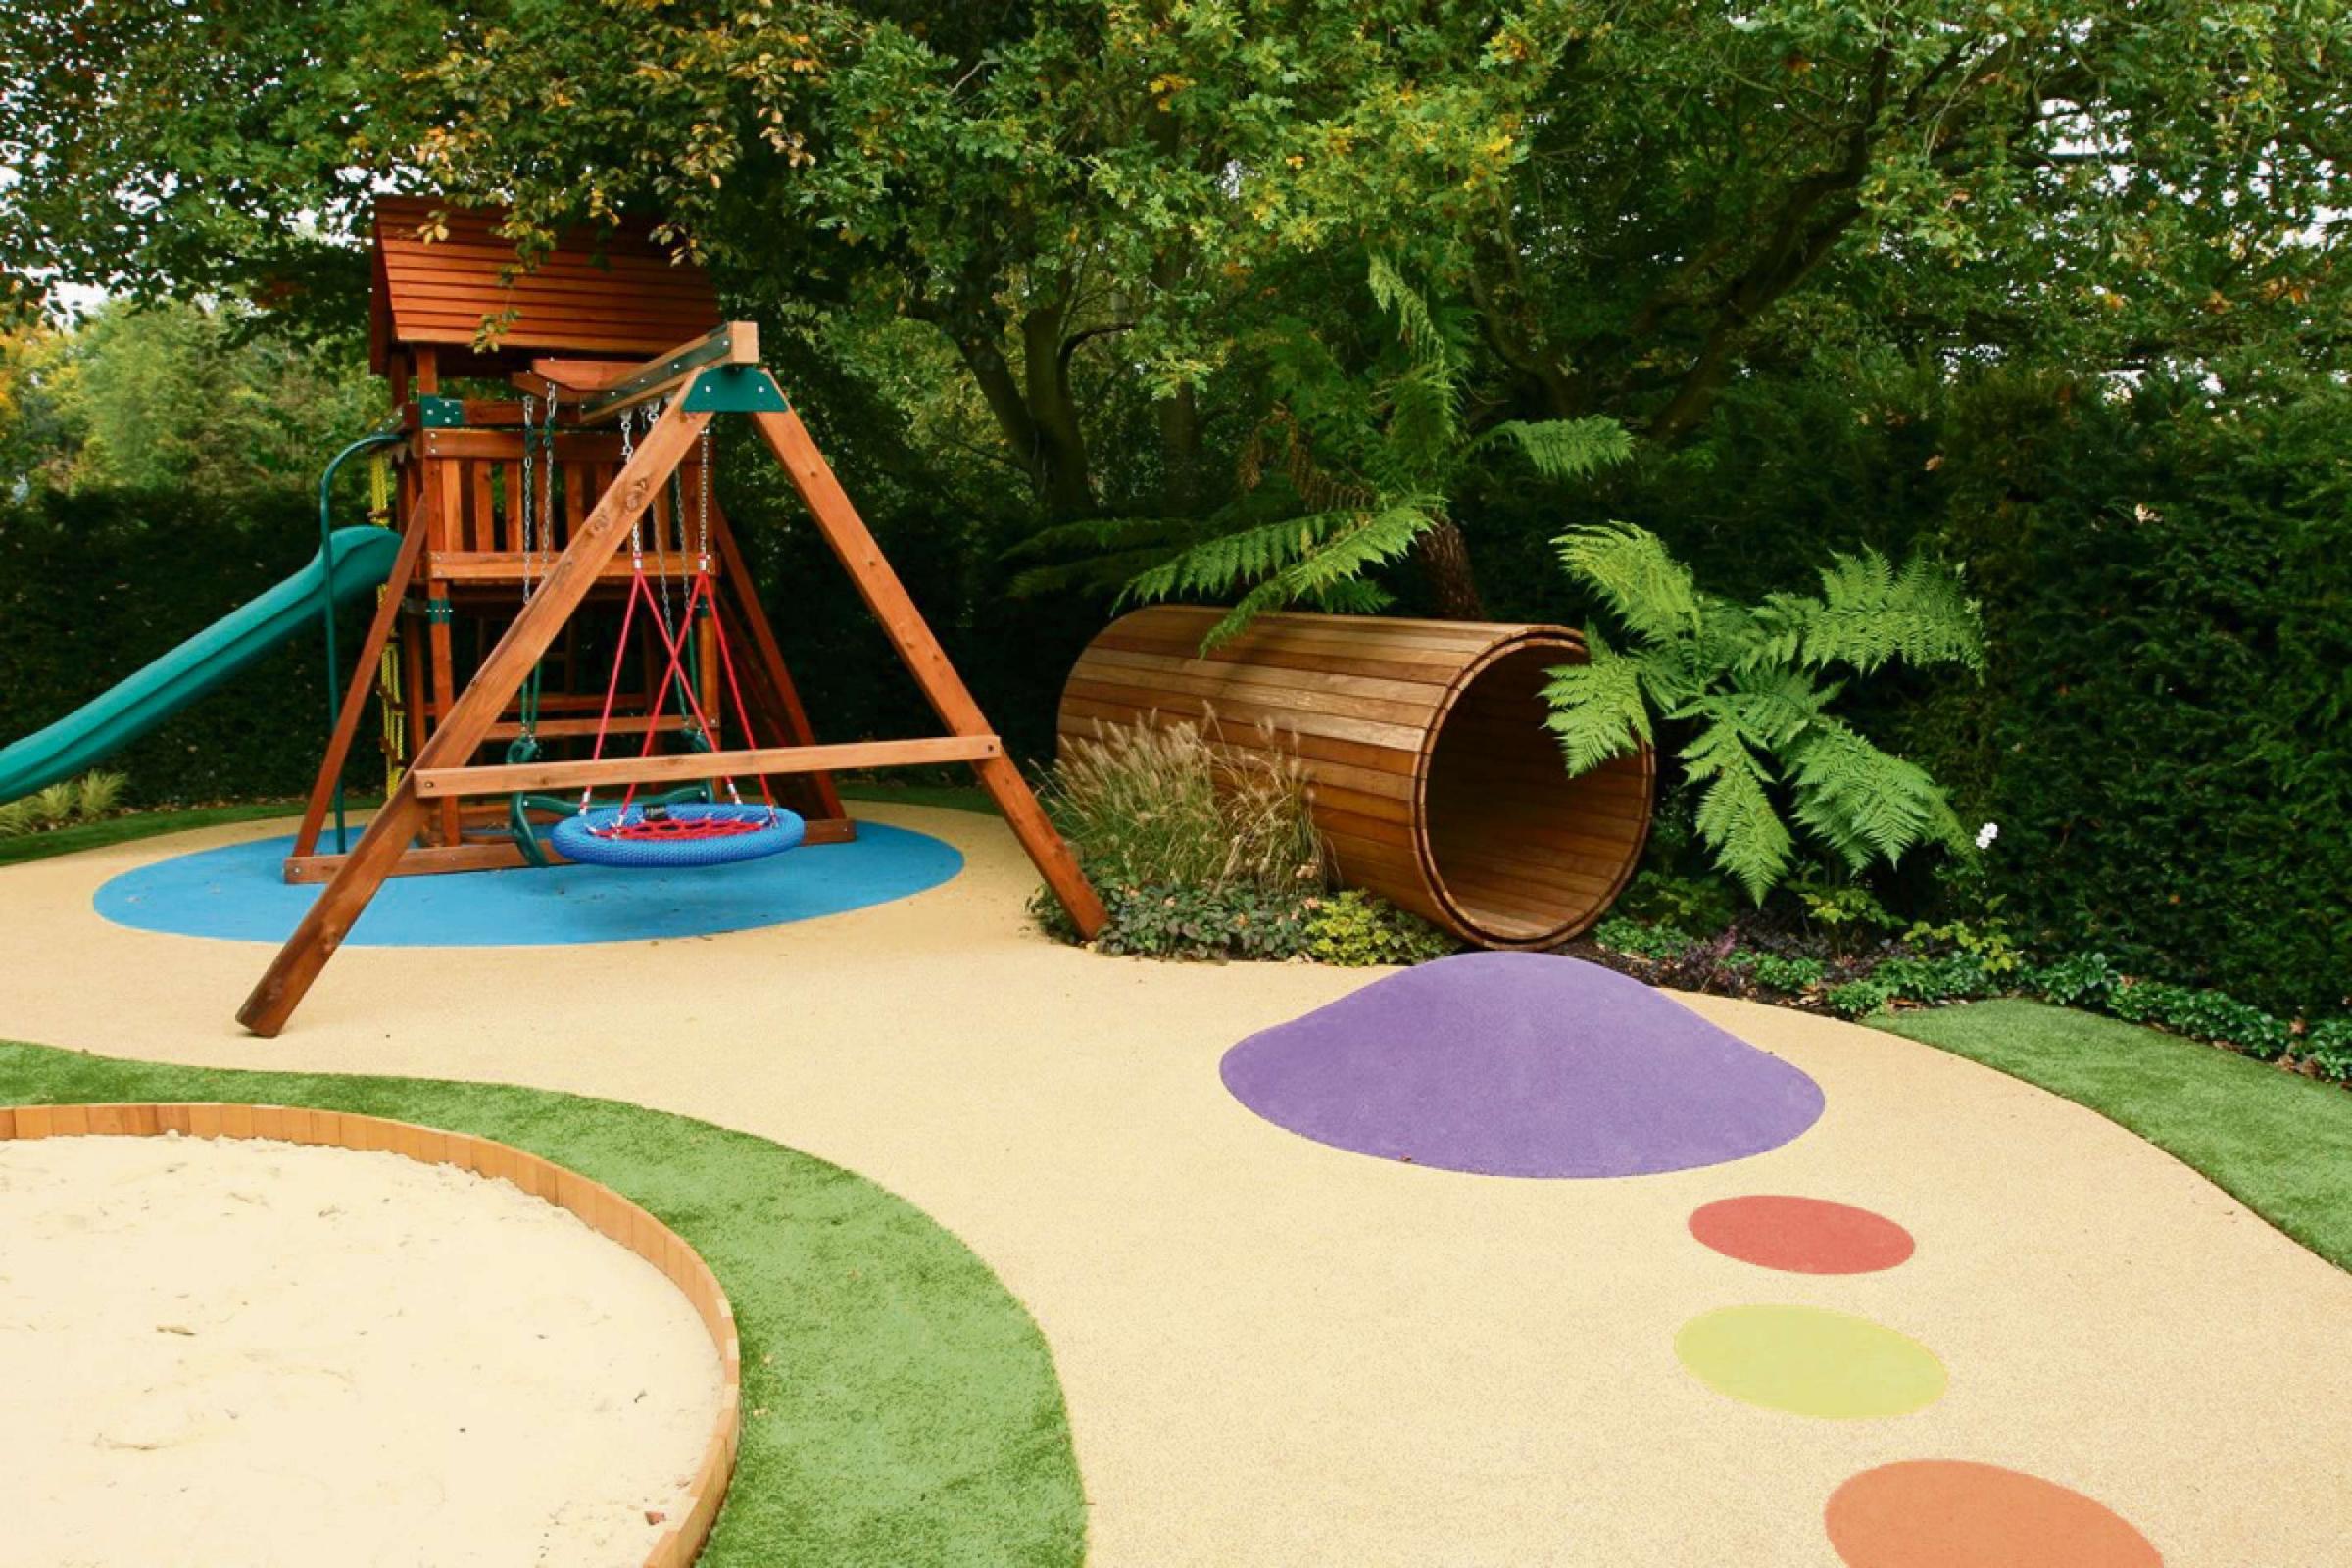 Plac zabaw w ogrodzie – jak go przygotować?